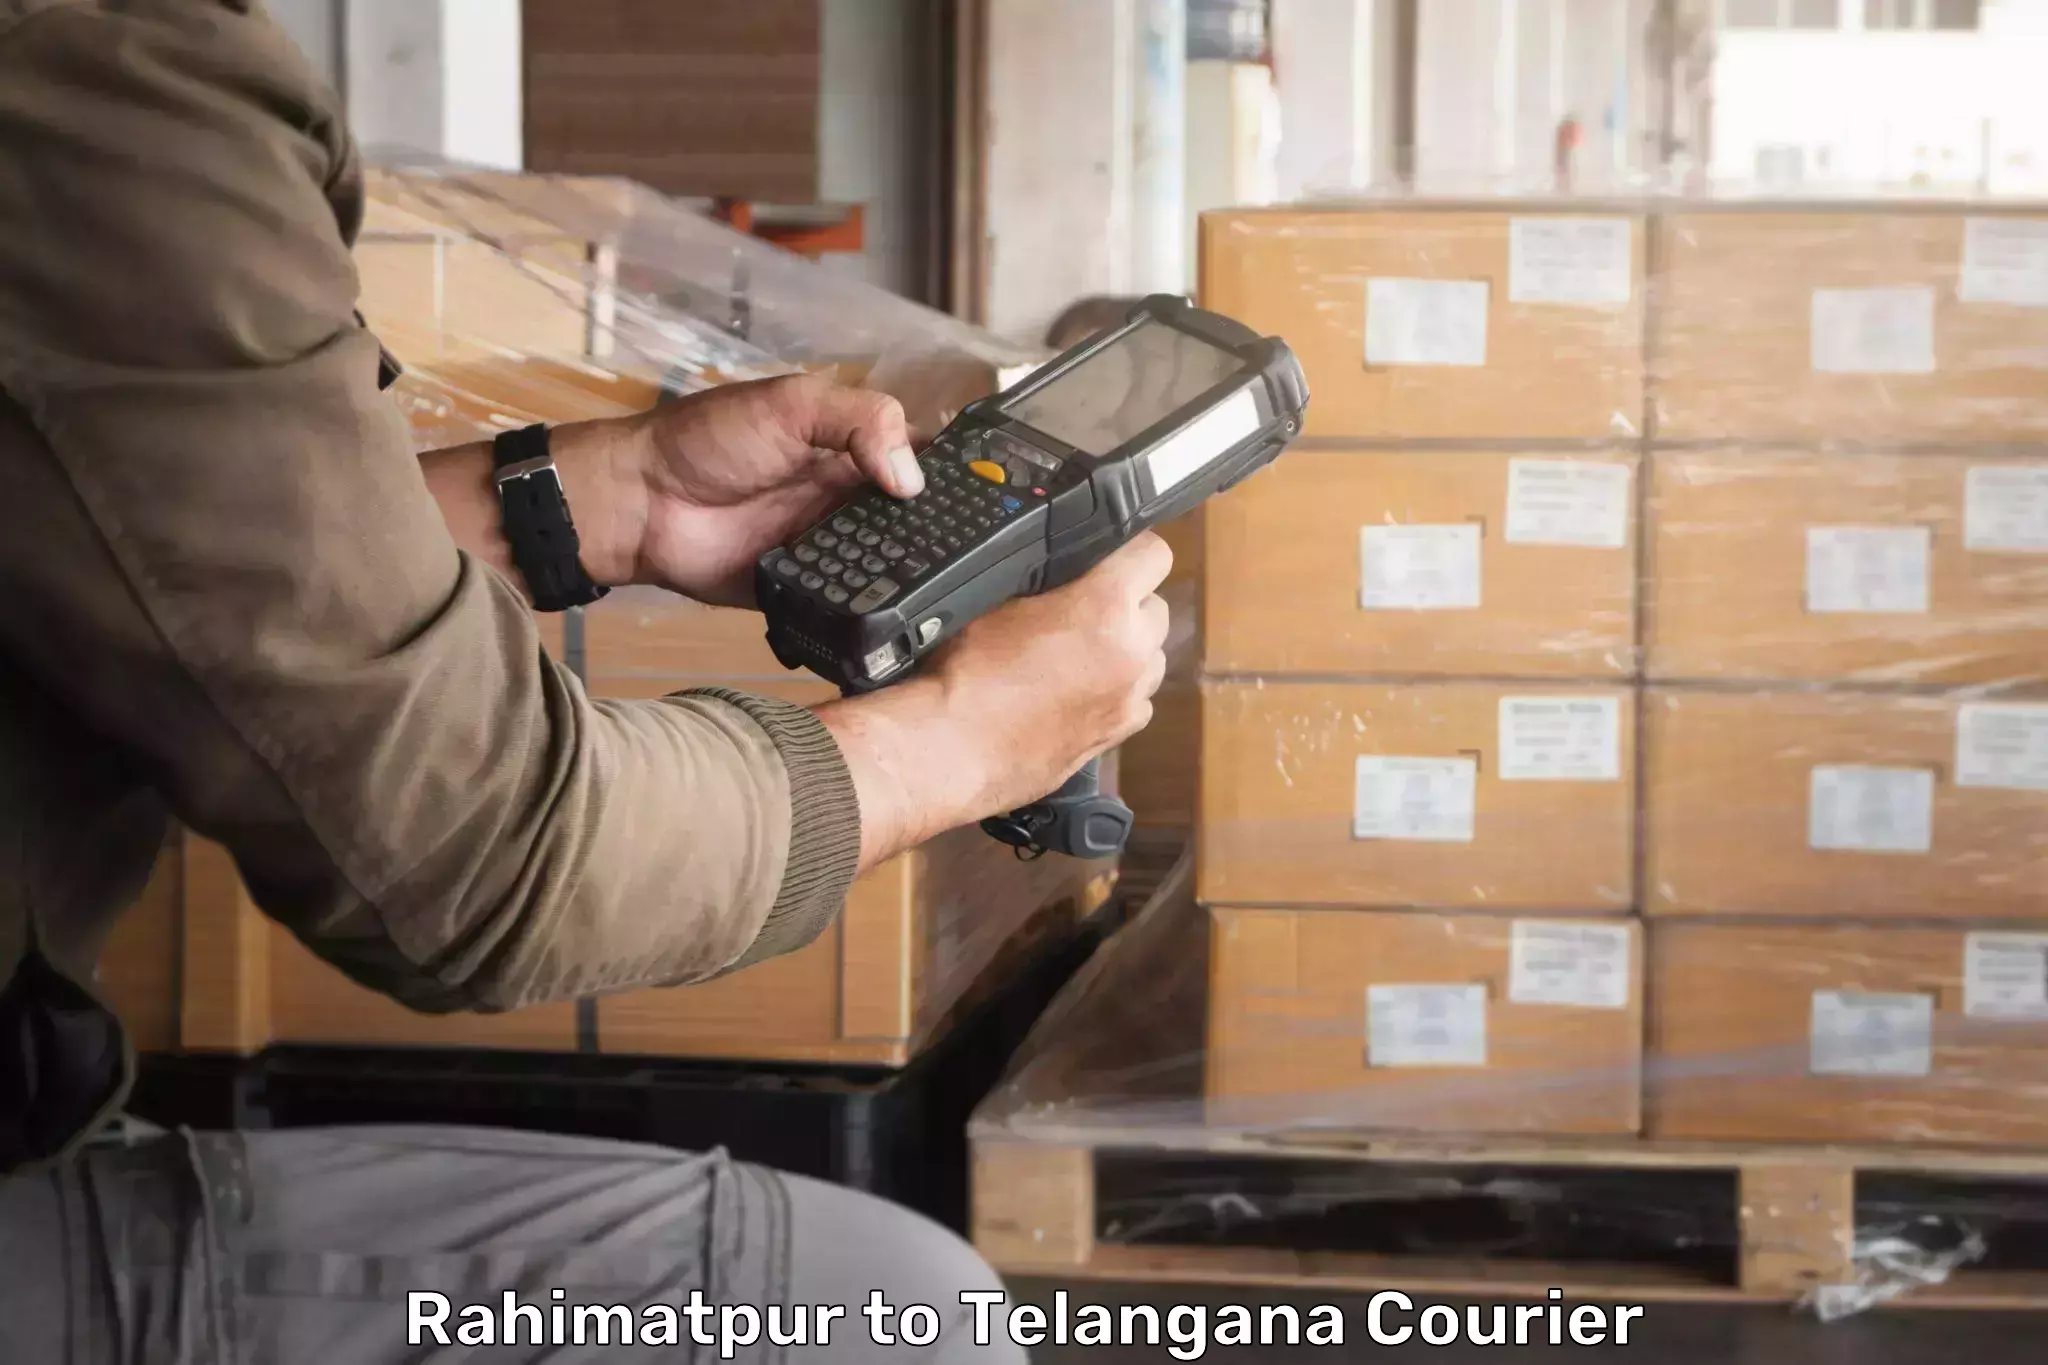 Logistics service provider Rahimatpur to Kaghaznagar